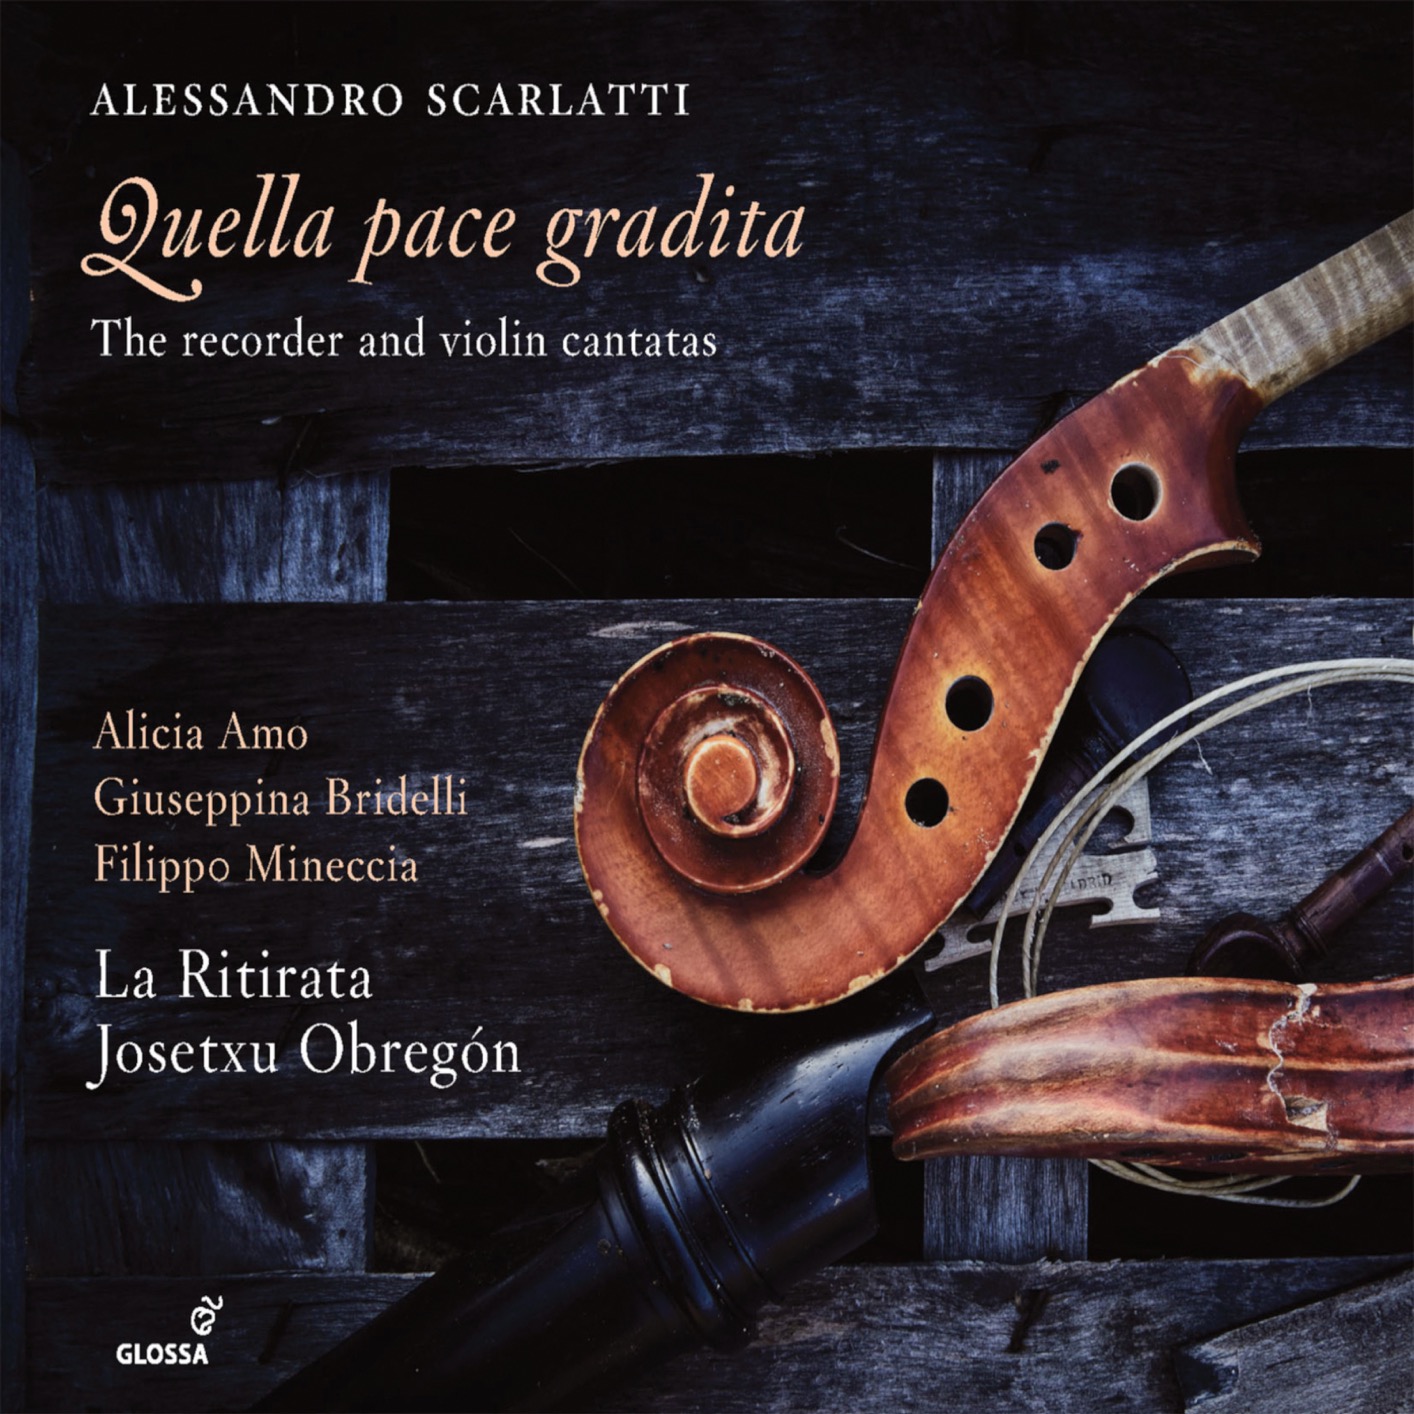 La Ritirata & Josetxu Obregon - Quella pace gradita: The Recorder & Violin Cantatas (2019) [FLAC 24bit/96kHz]